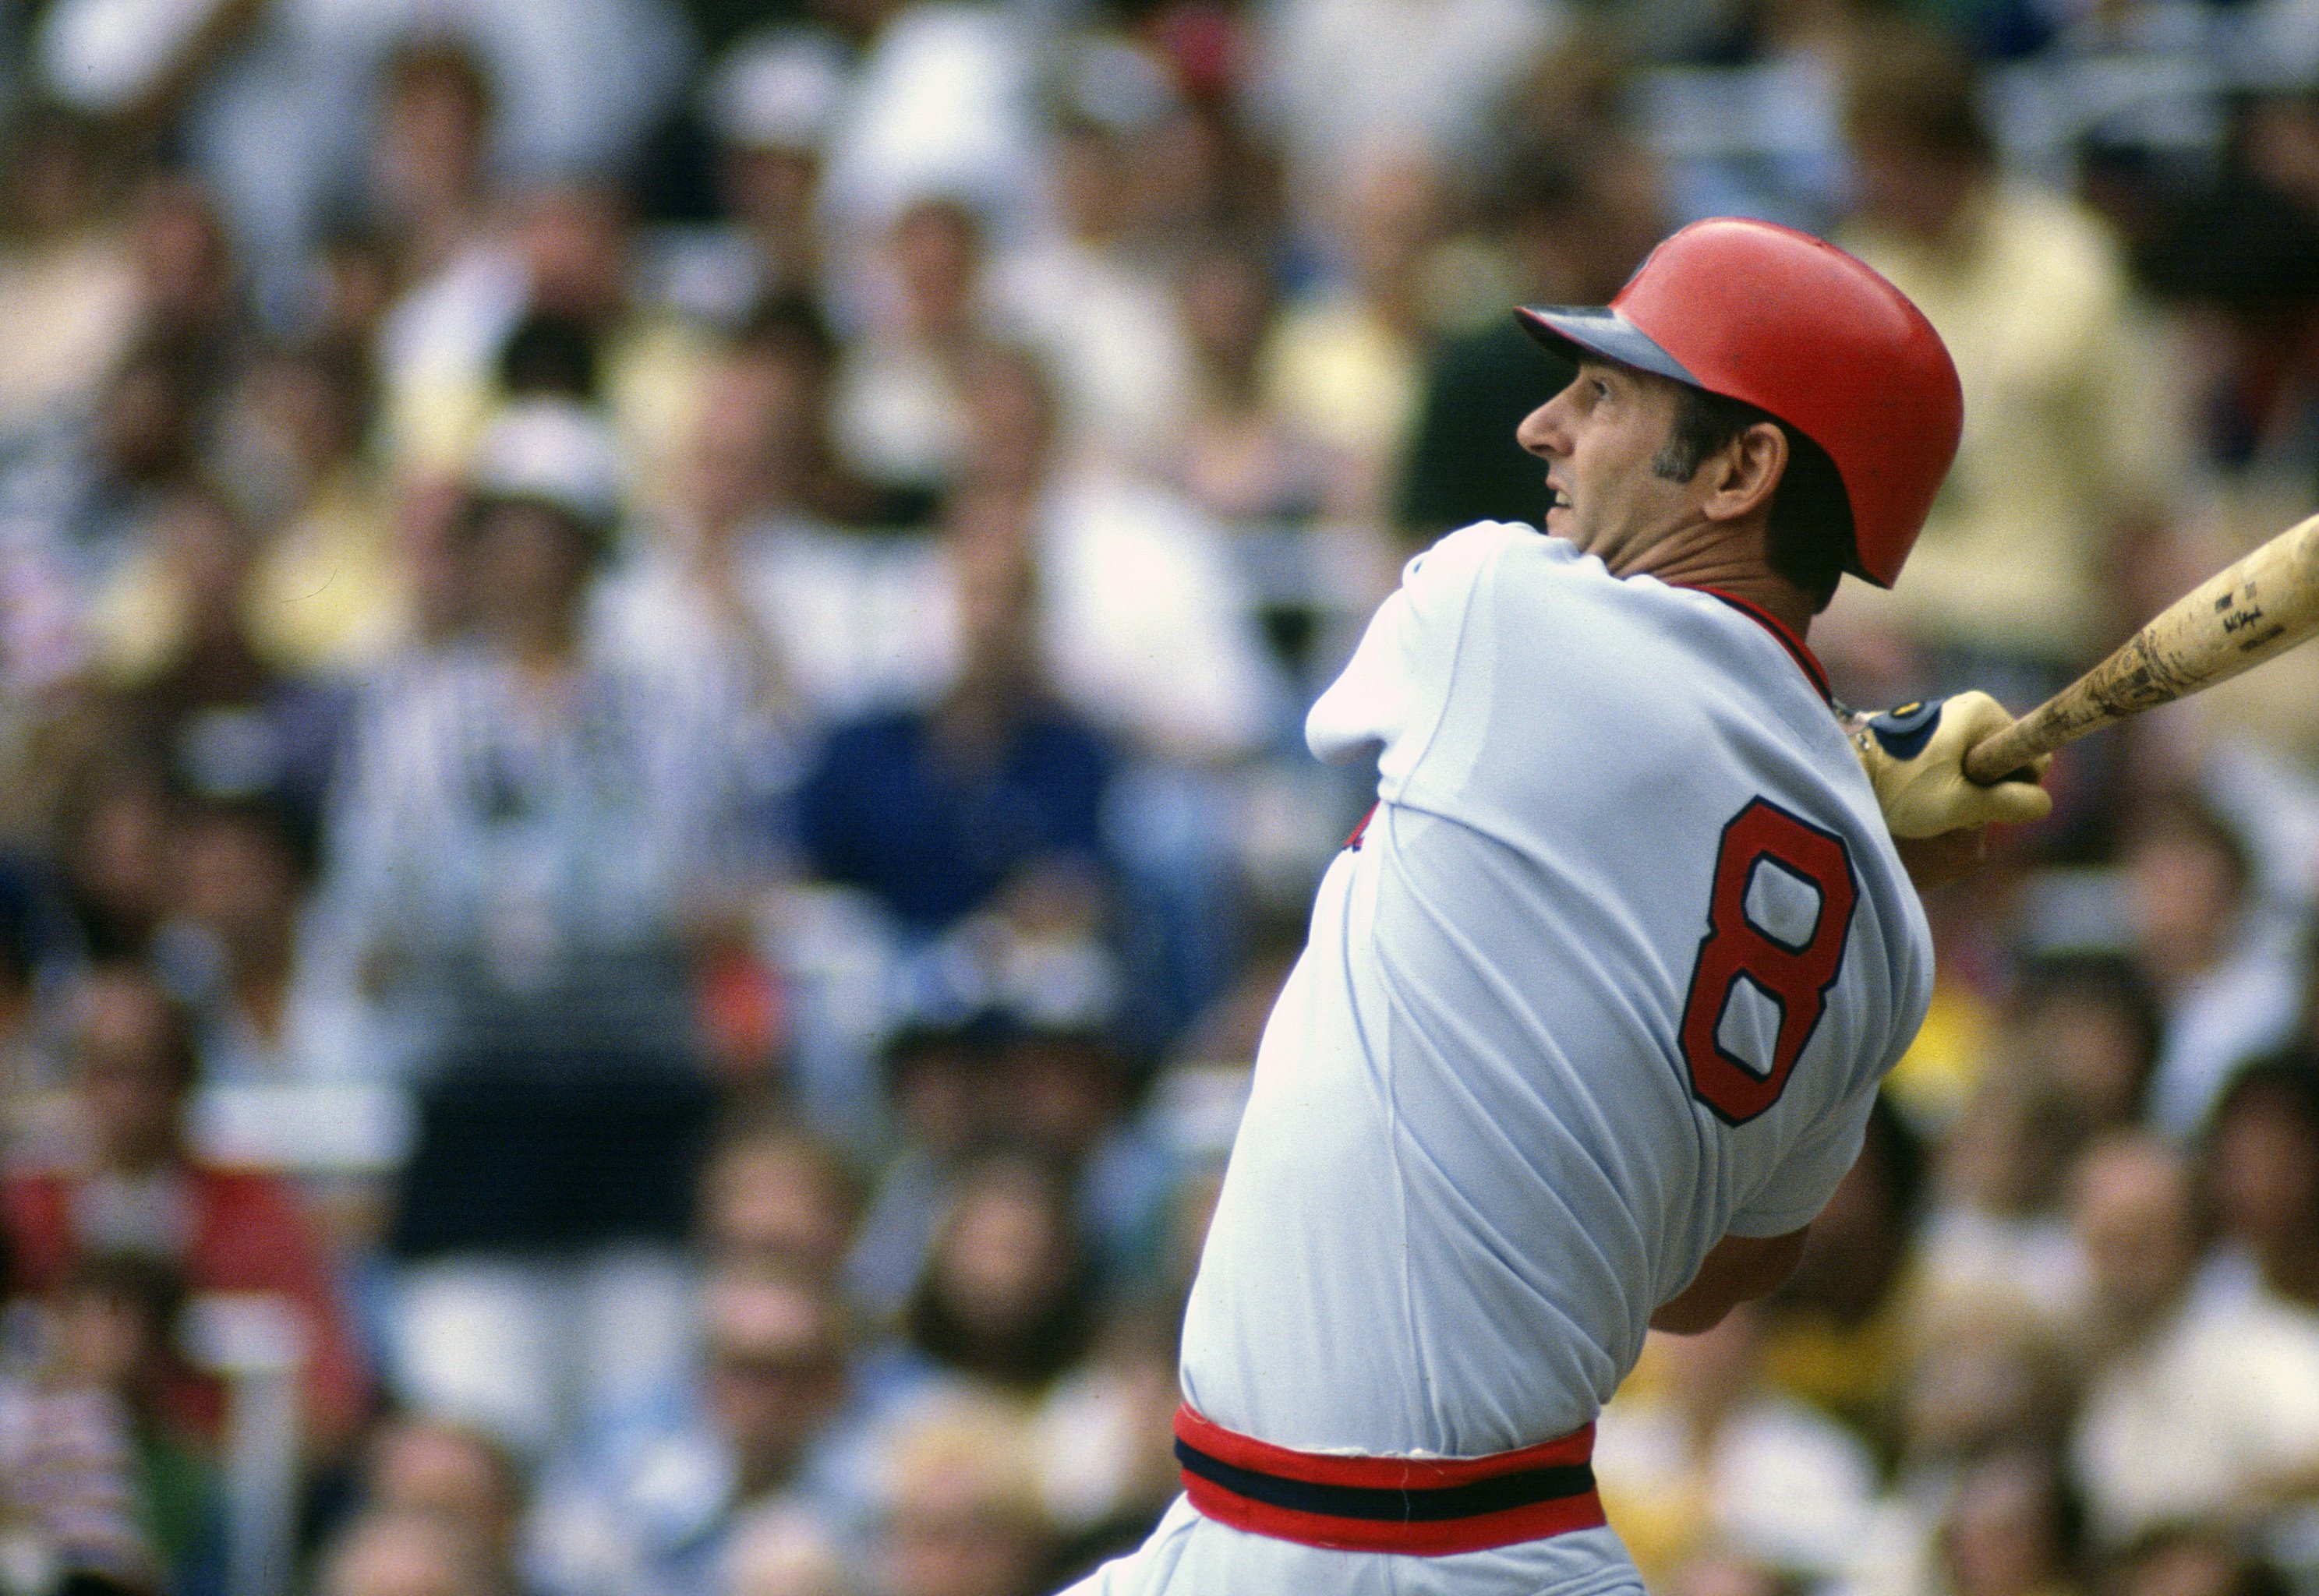 1970s Baseball - Happy Birthday to 'Beltin' Bill Melton, a 10 year